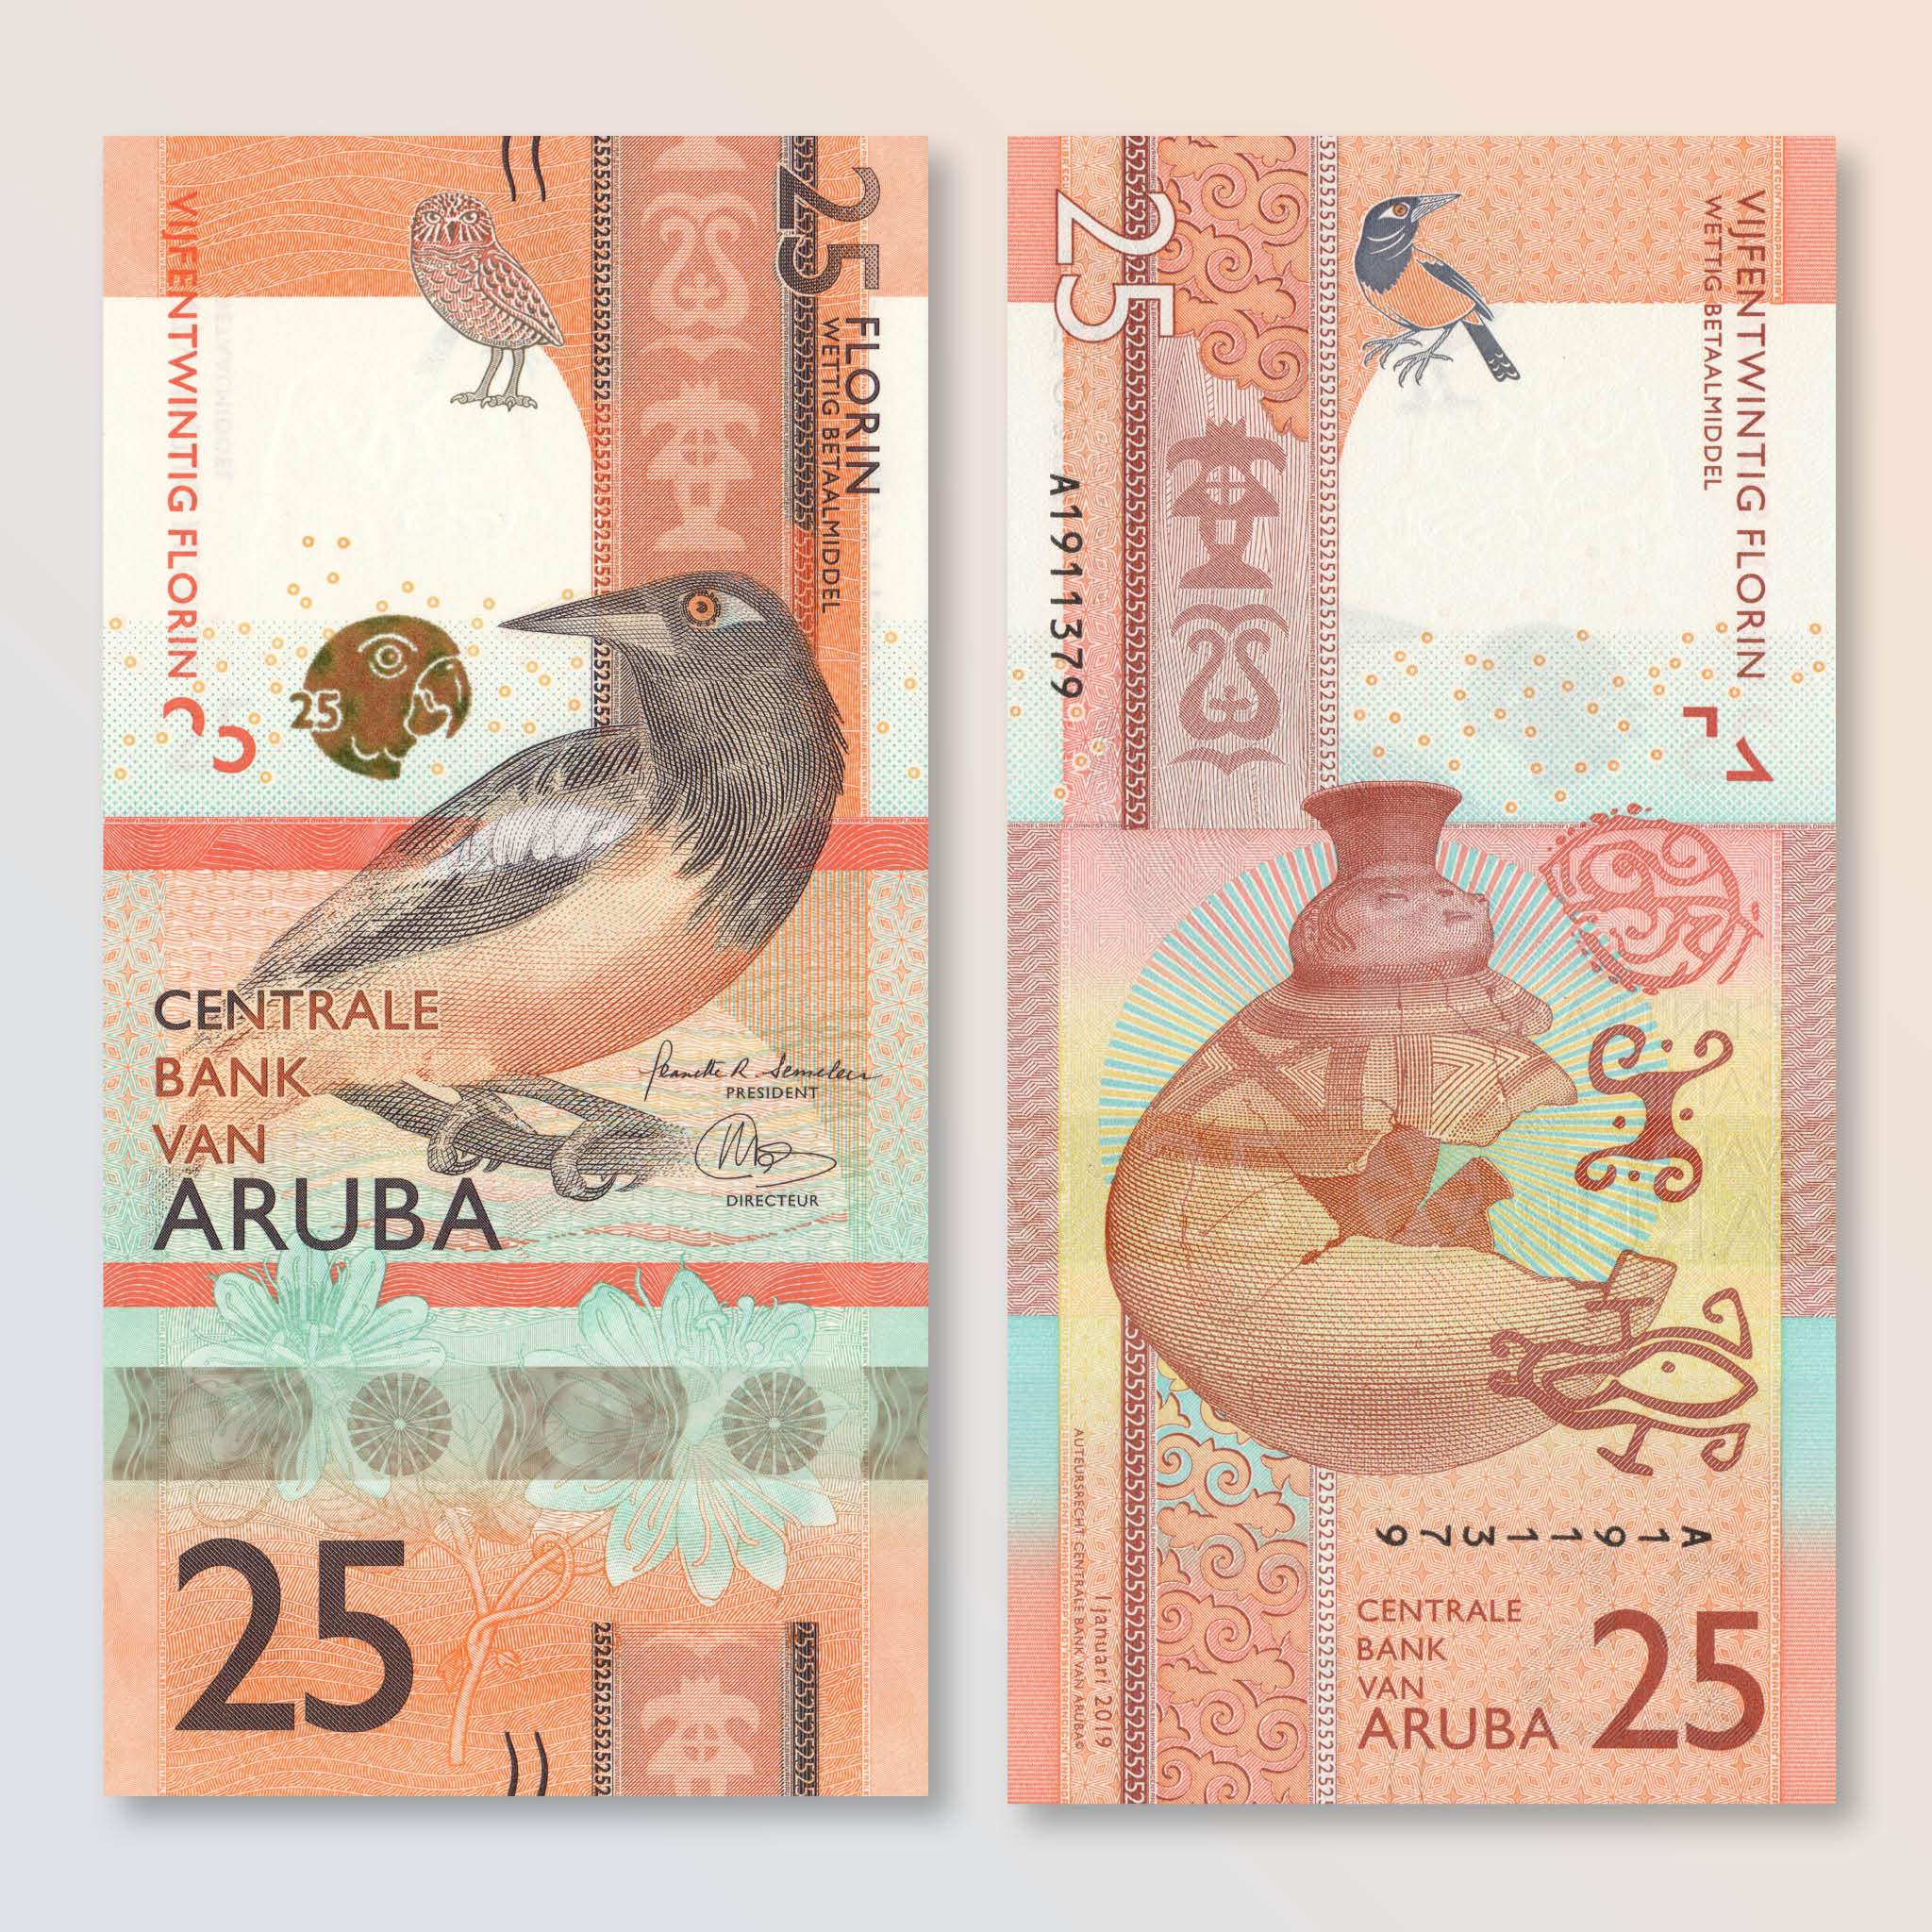 Aruba 25 Florin, 2019, B122a, UNC - Robert's World Money - World Banknotes